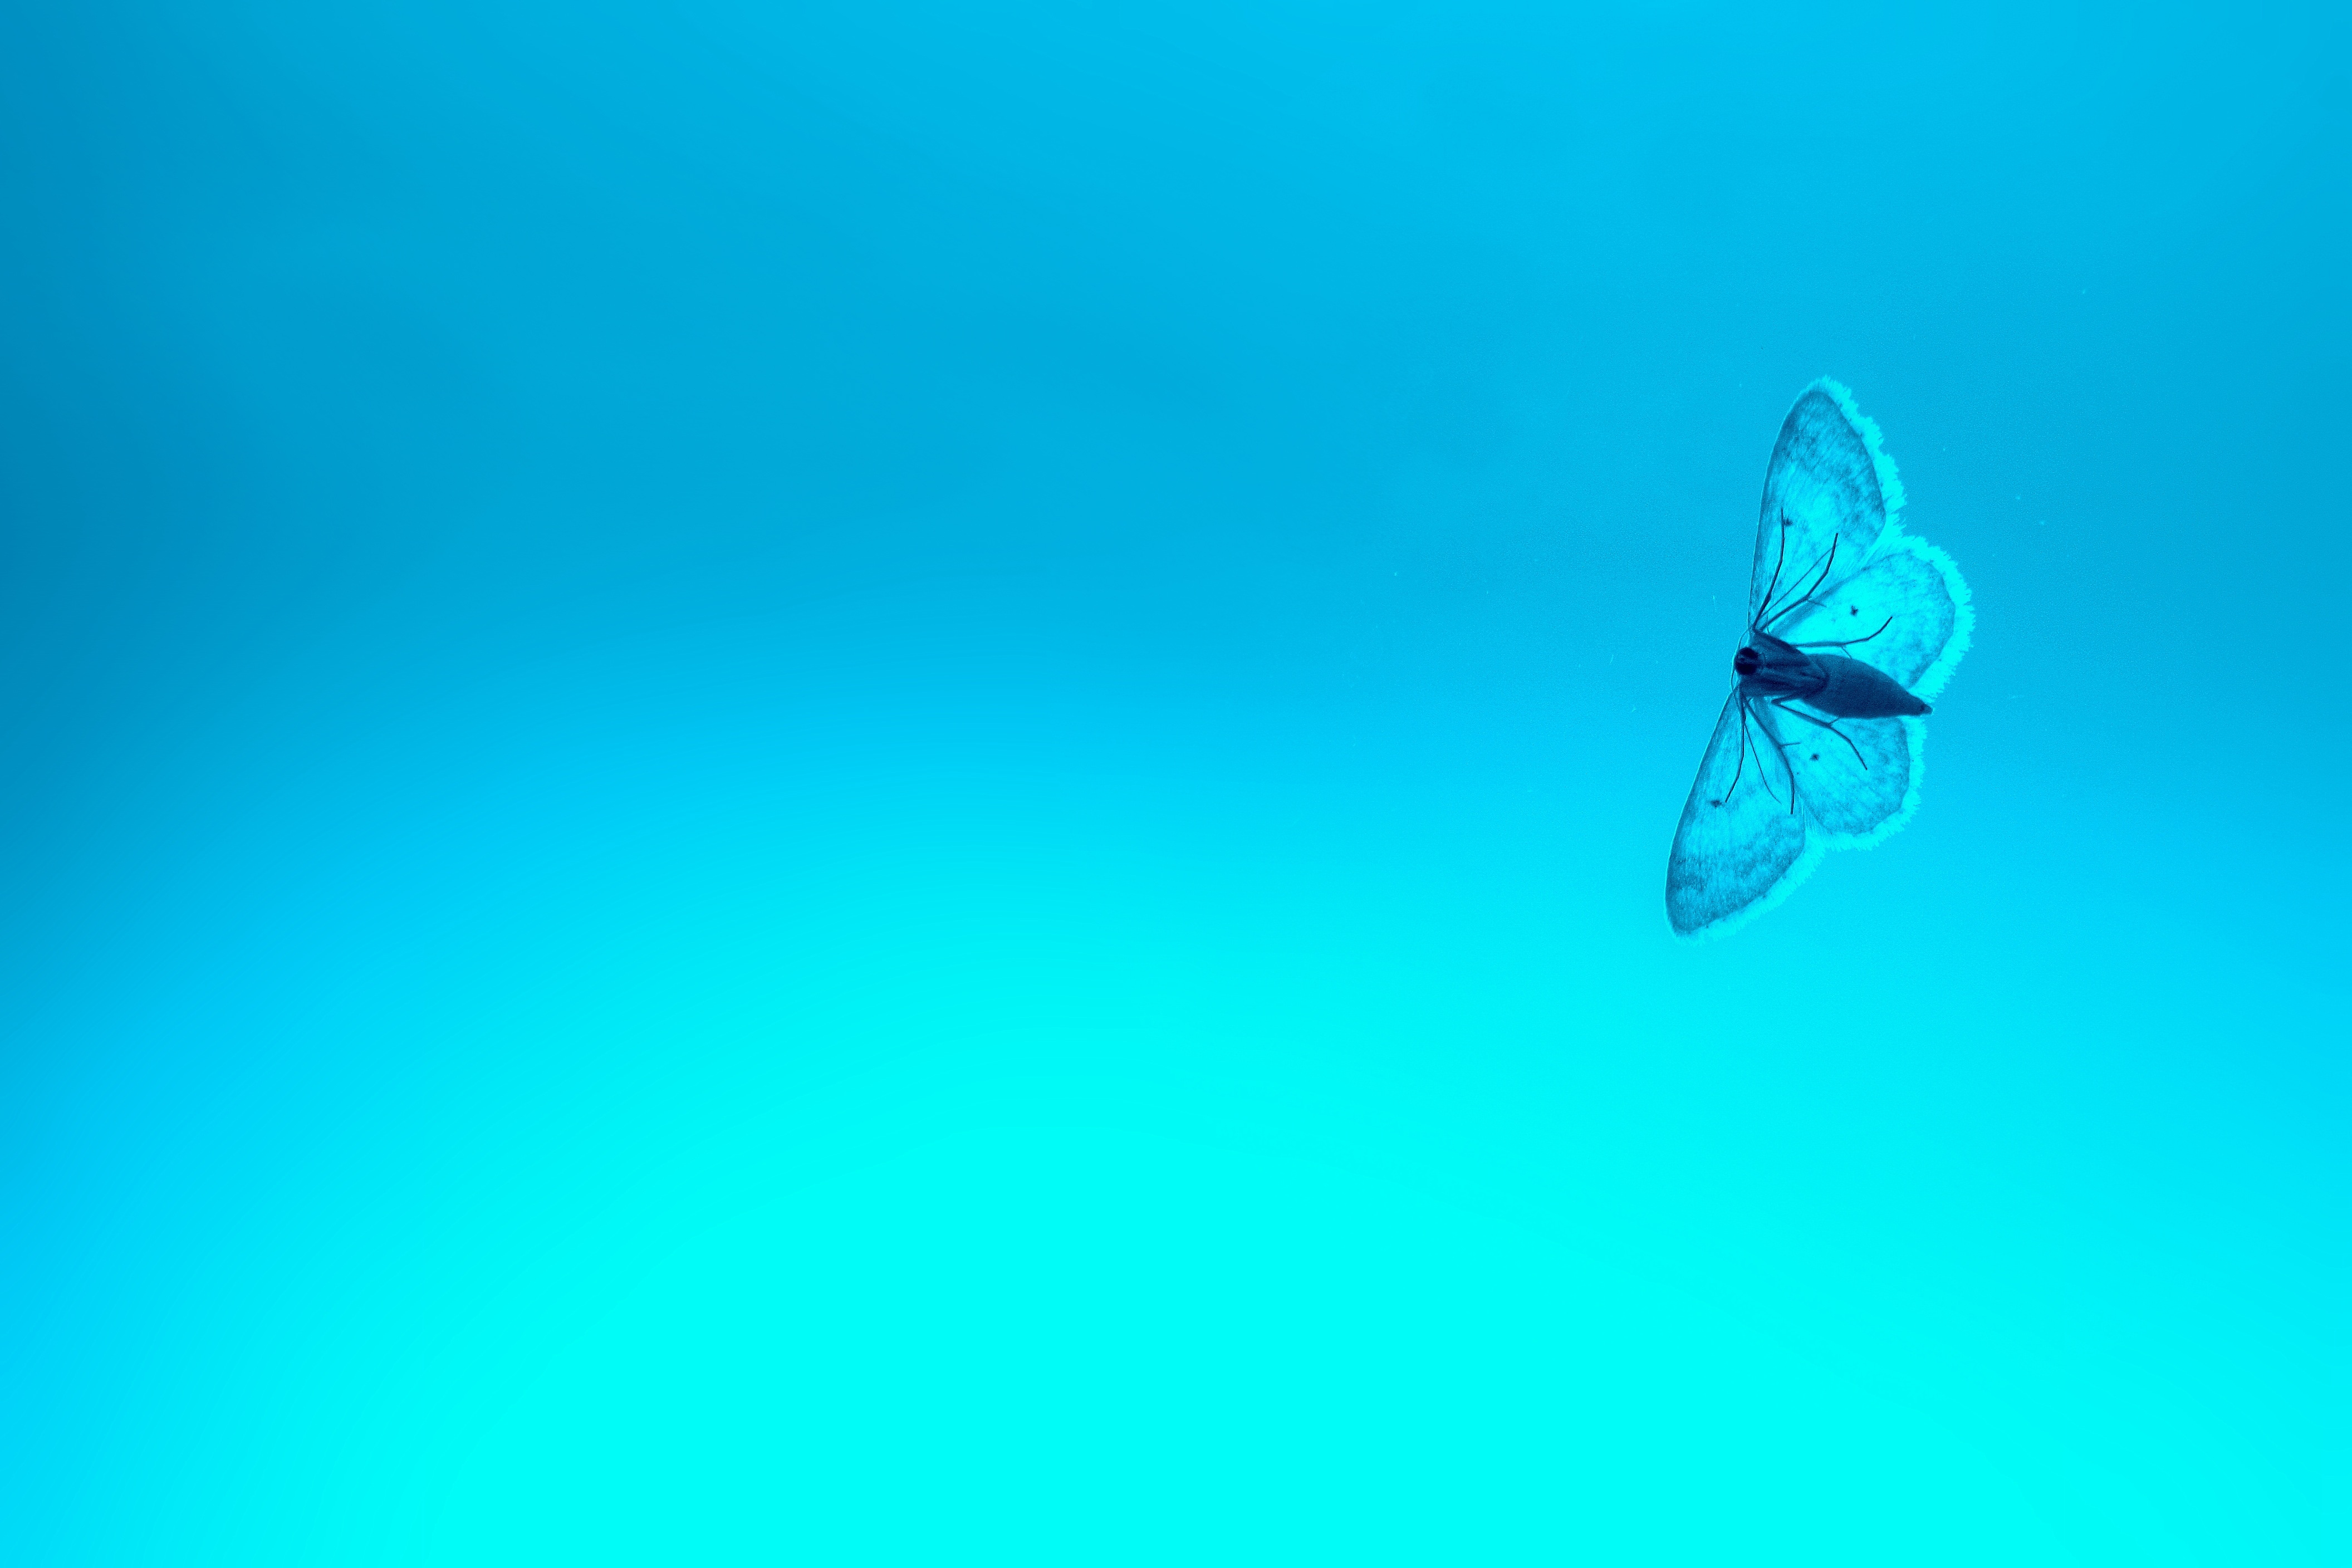 Фото обои голубая бабочка, мотылек, насекомые, насекомое - бесплатные картинки на Fonwall